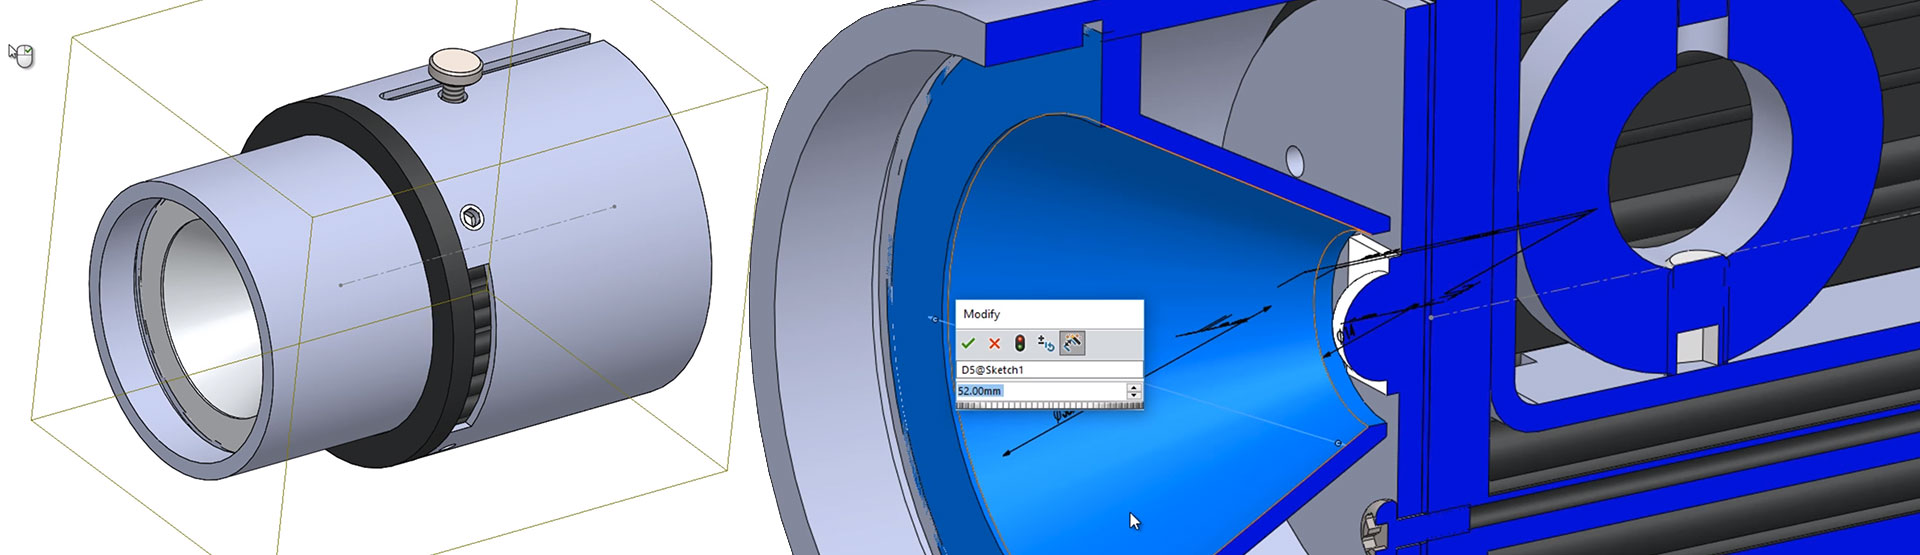 plantageejer Dag Nedrustning Lighting Design With SOLIDWORKS 3D CAD | Innova Systems | UK Reseller